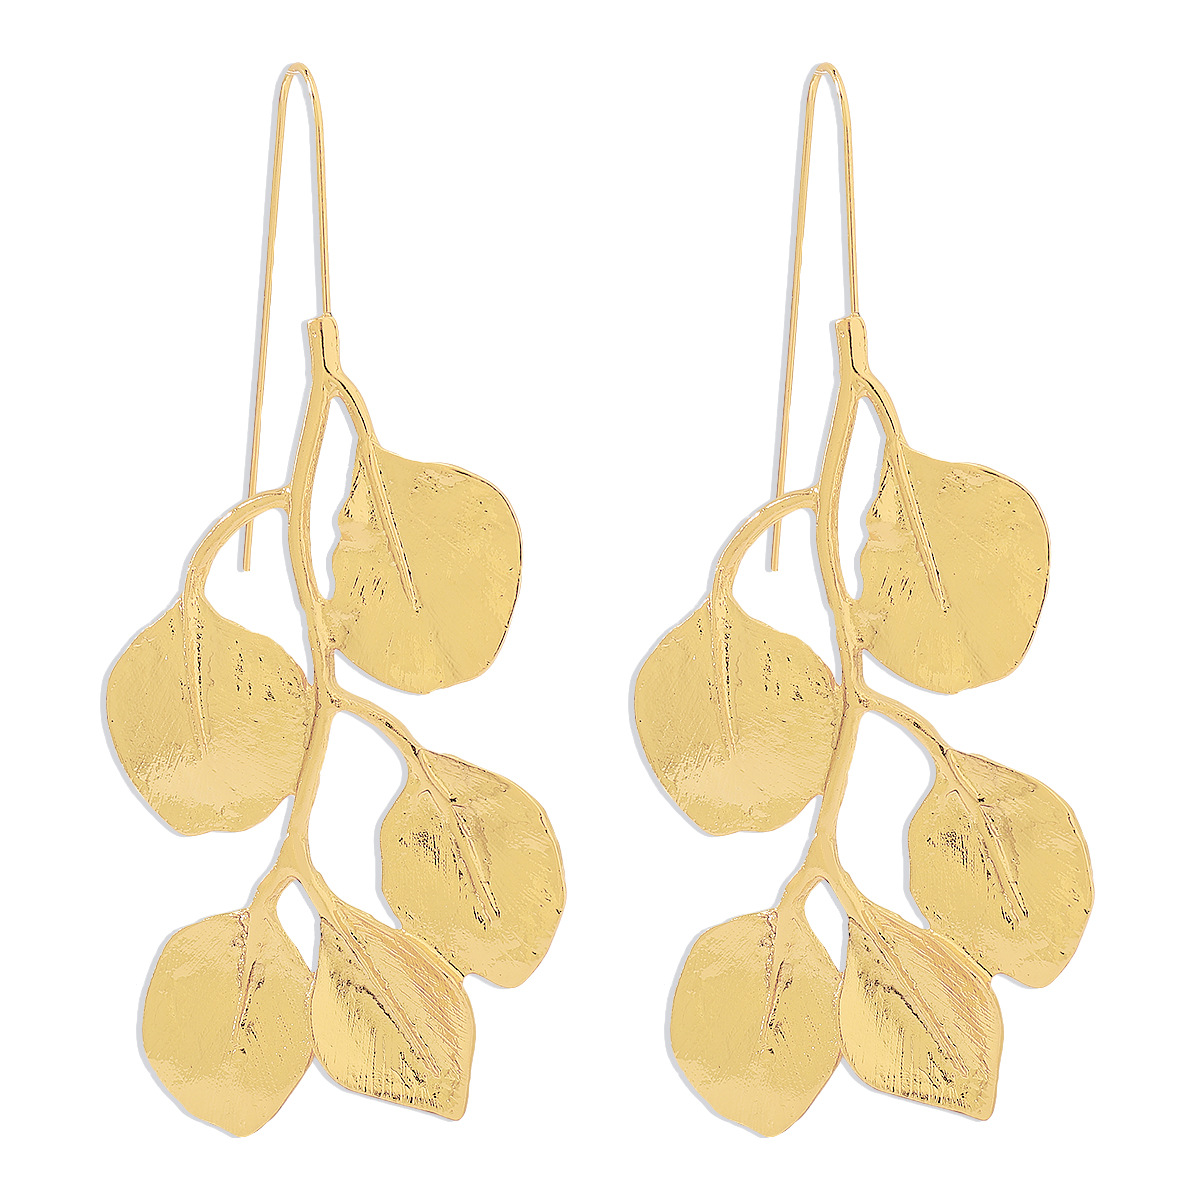 3:Gold earrings